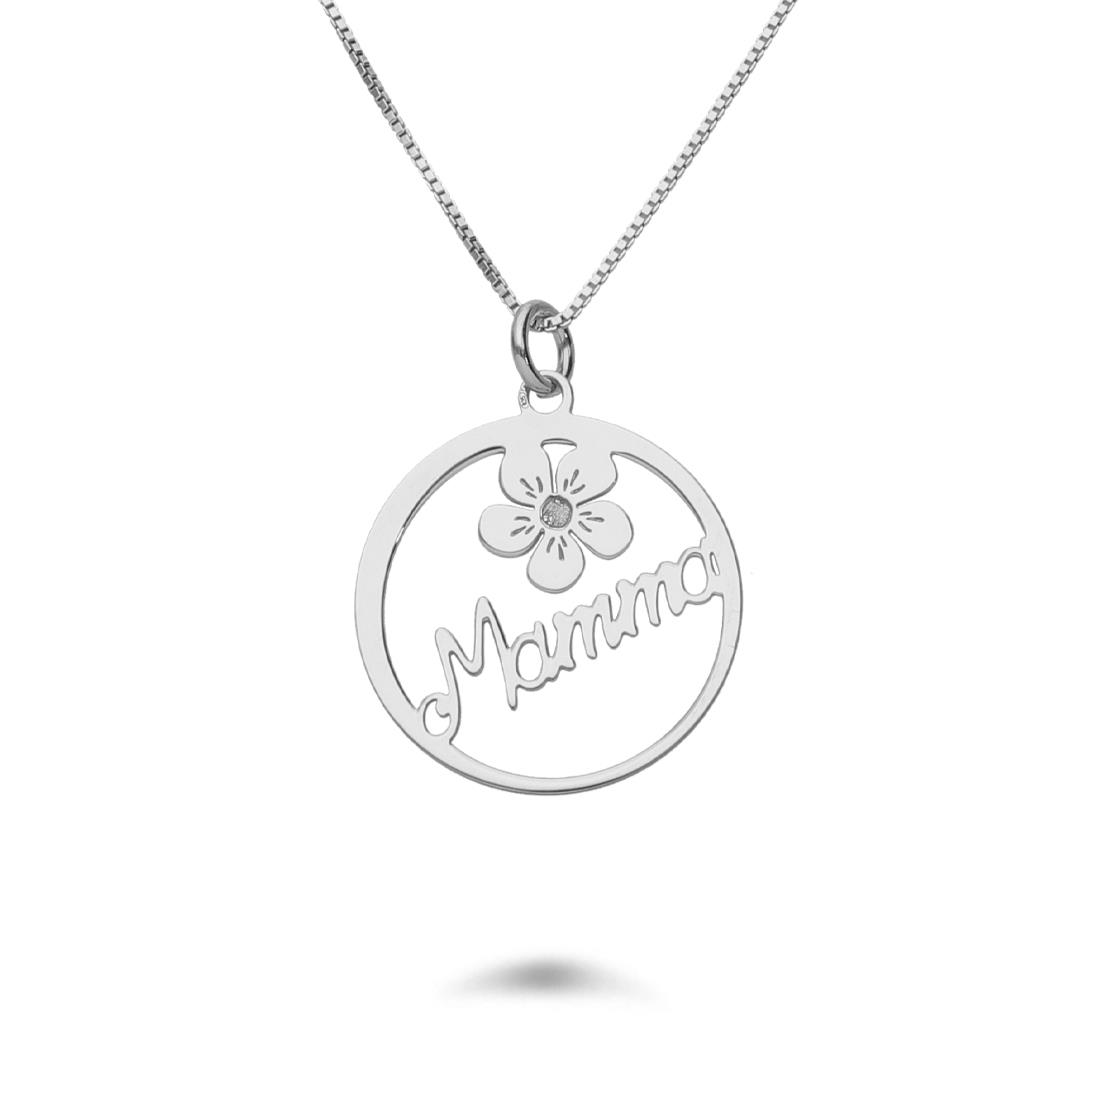 Rodaito silver necklace with circle pendant - DESIDERI PREZIOSI